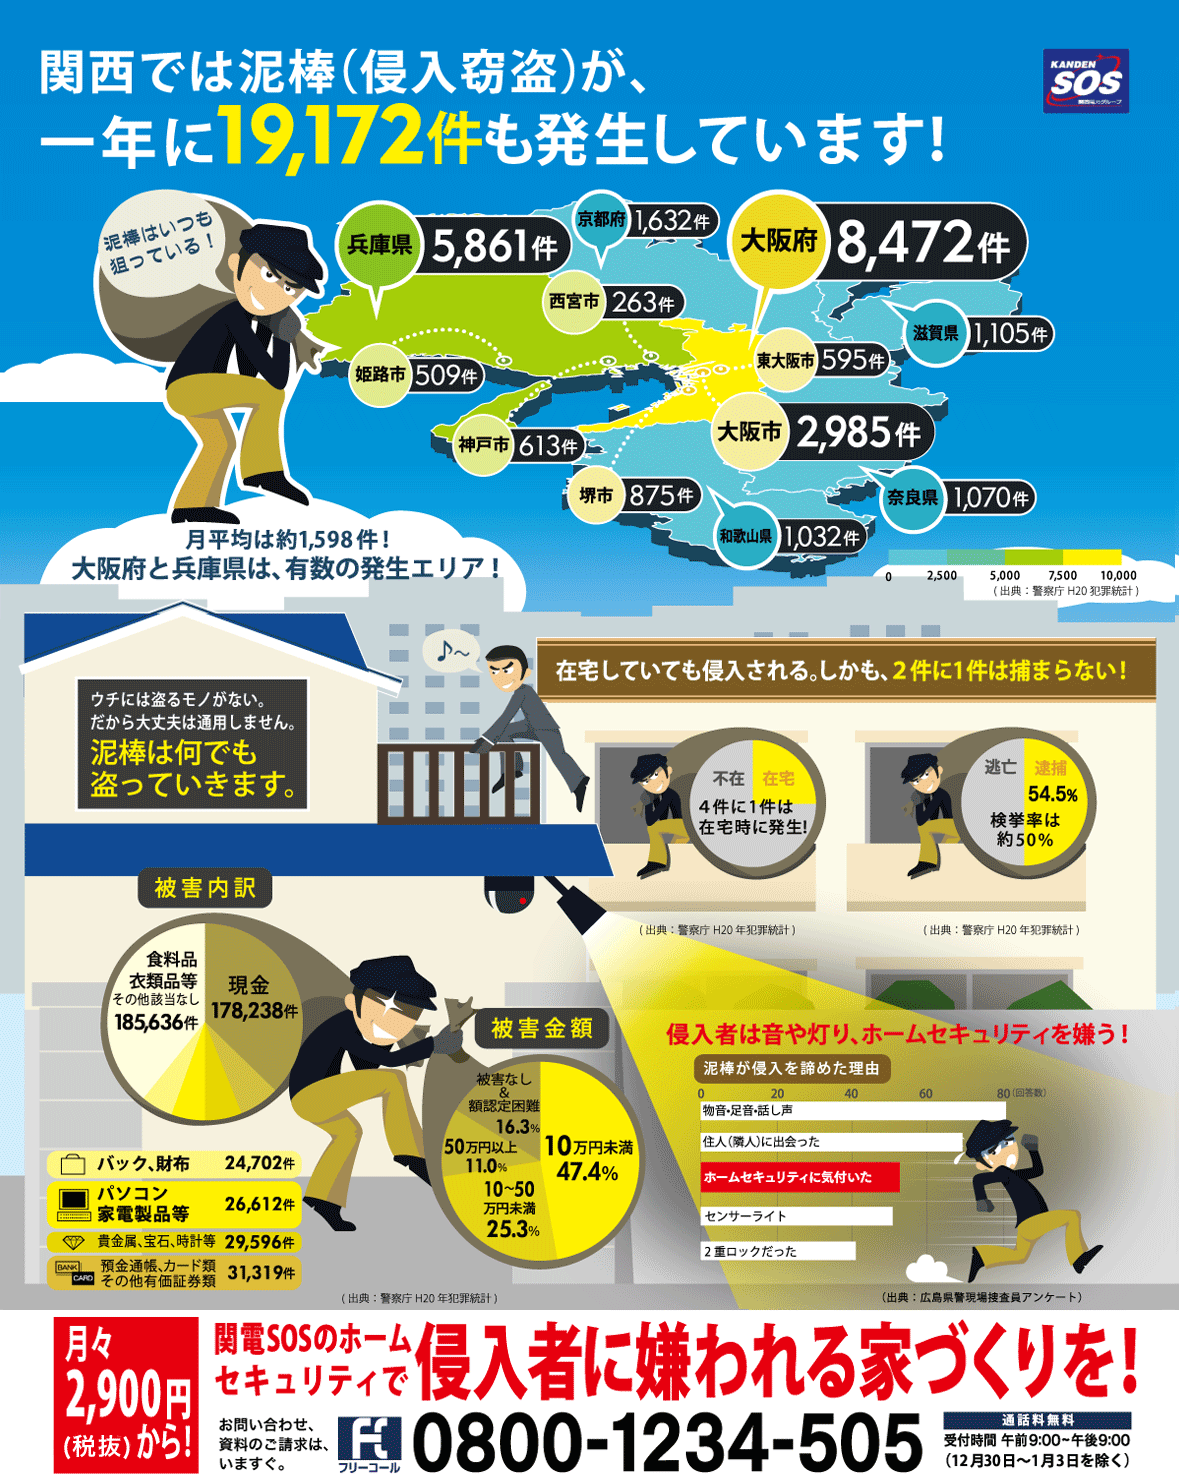 関西では泥棒（侵入窃盗）が、一年に19,172件も発生しています！月平均は約1,598件！大阪府と兵庫県は、有数の発生エリア！